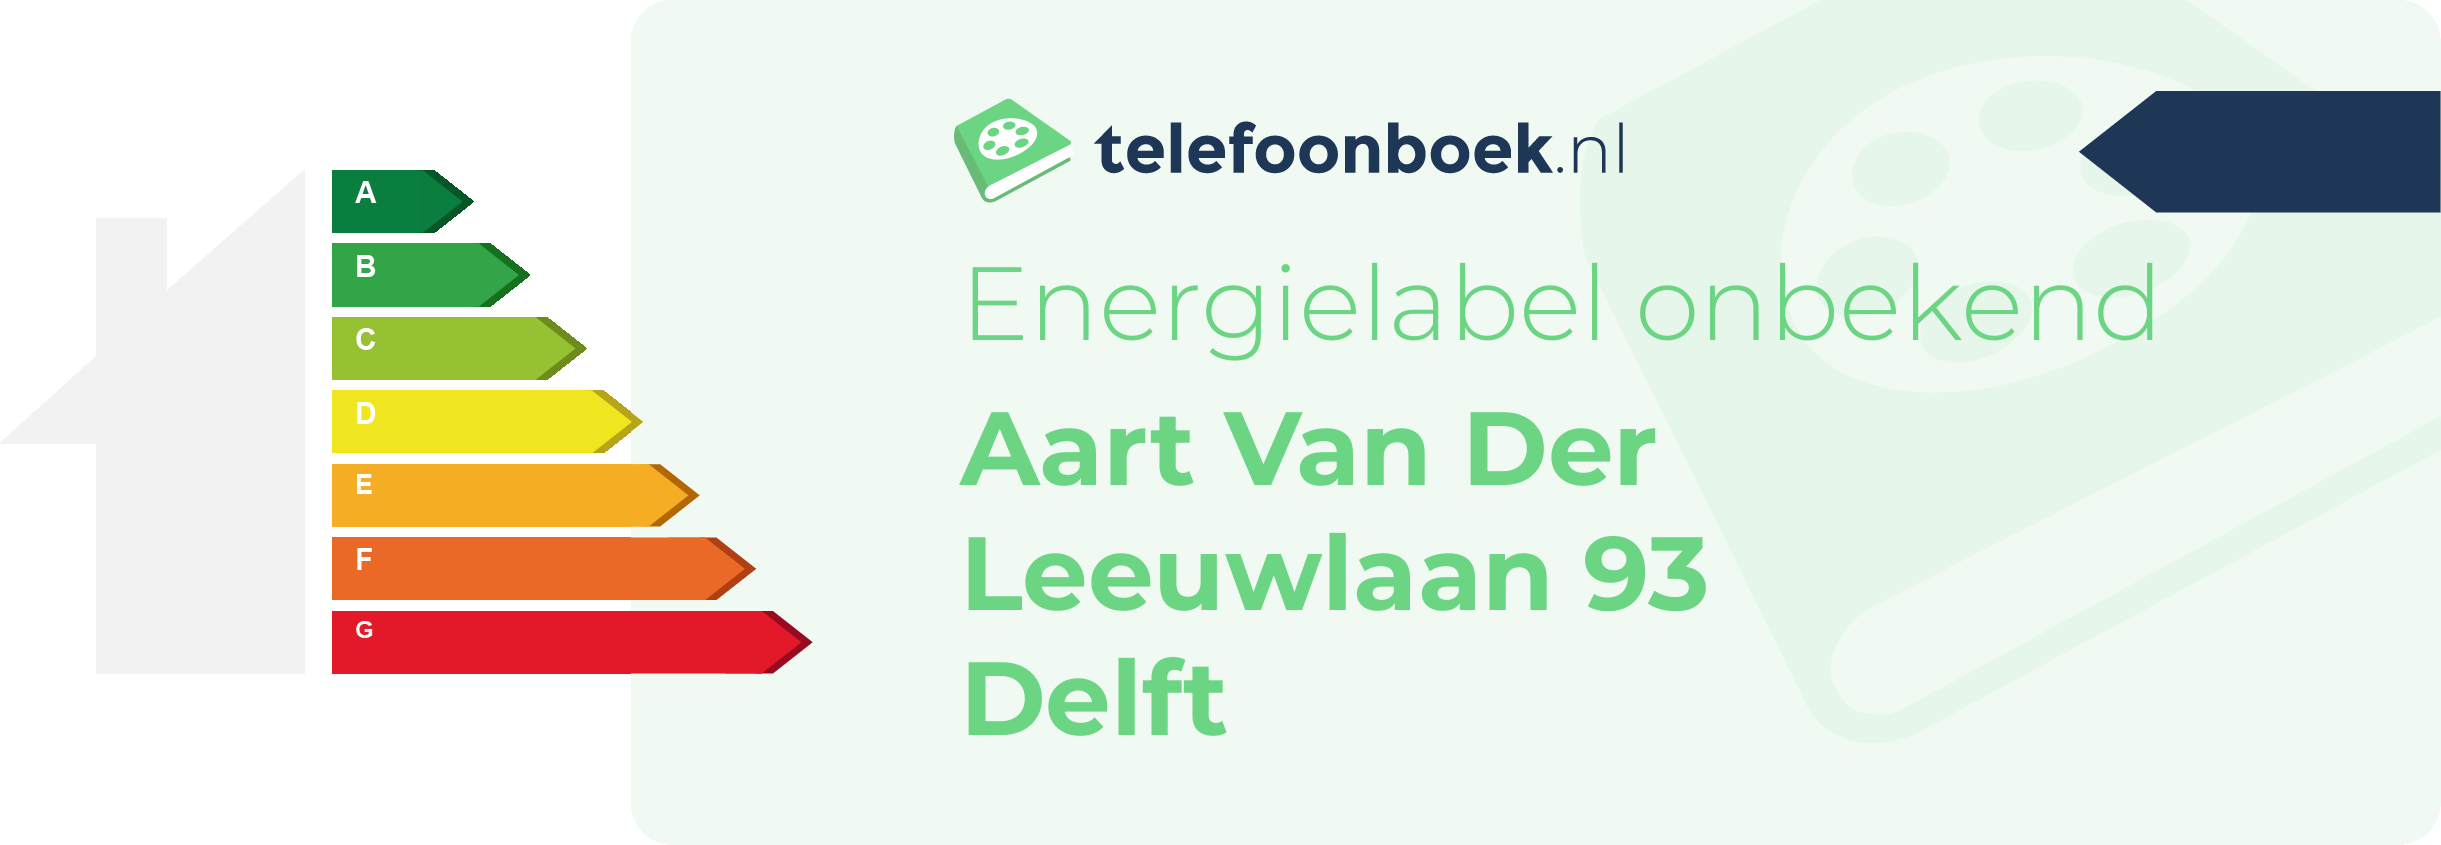 Energielabel Aart Van Der Leeuwlaan 93 Delft